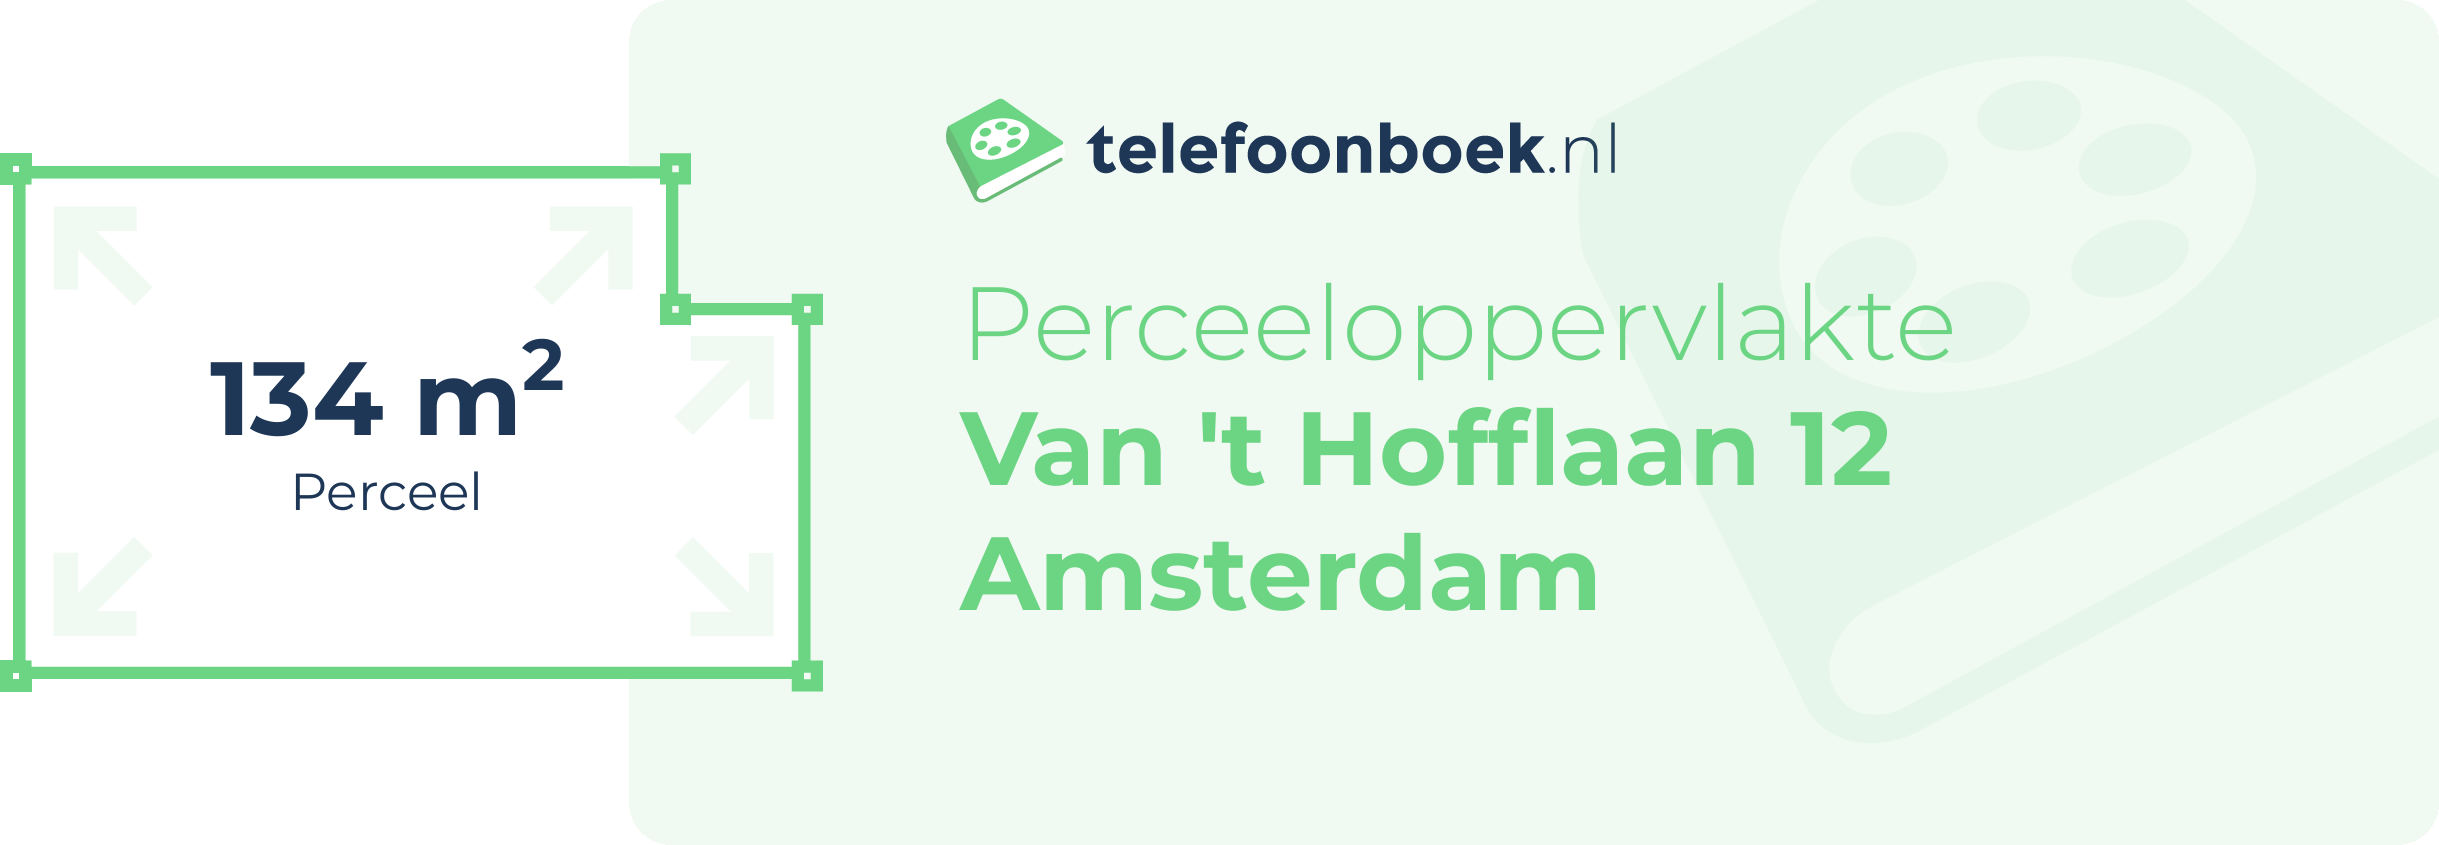 Perceeloppervlakte Van 't Hofflaan 12 Amsterdam